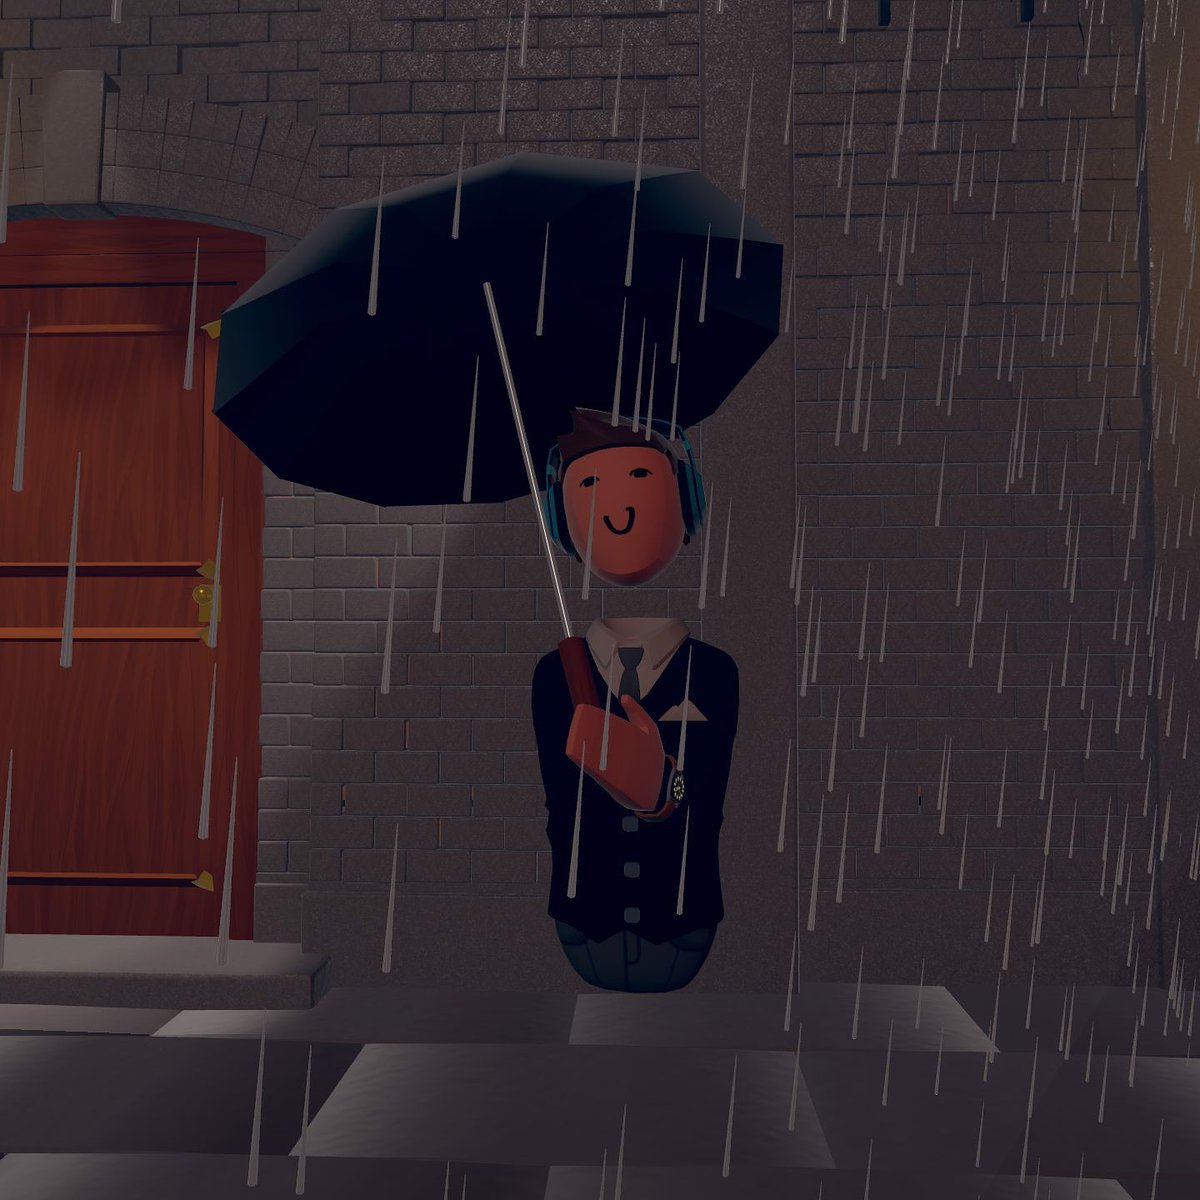 'I'm singing in the rain, I'm singing in the rain'
#recroom #recroomvr #singingintherain #60sfilm